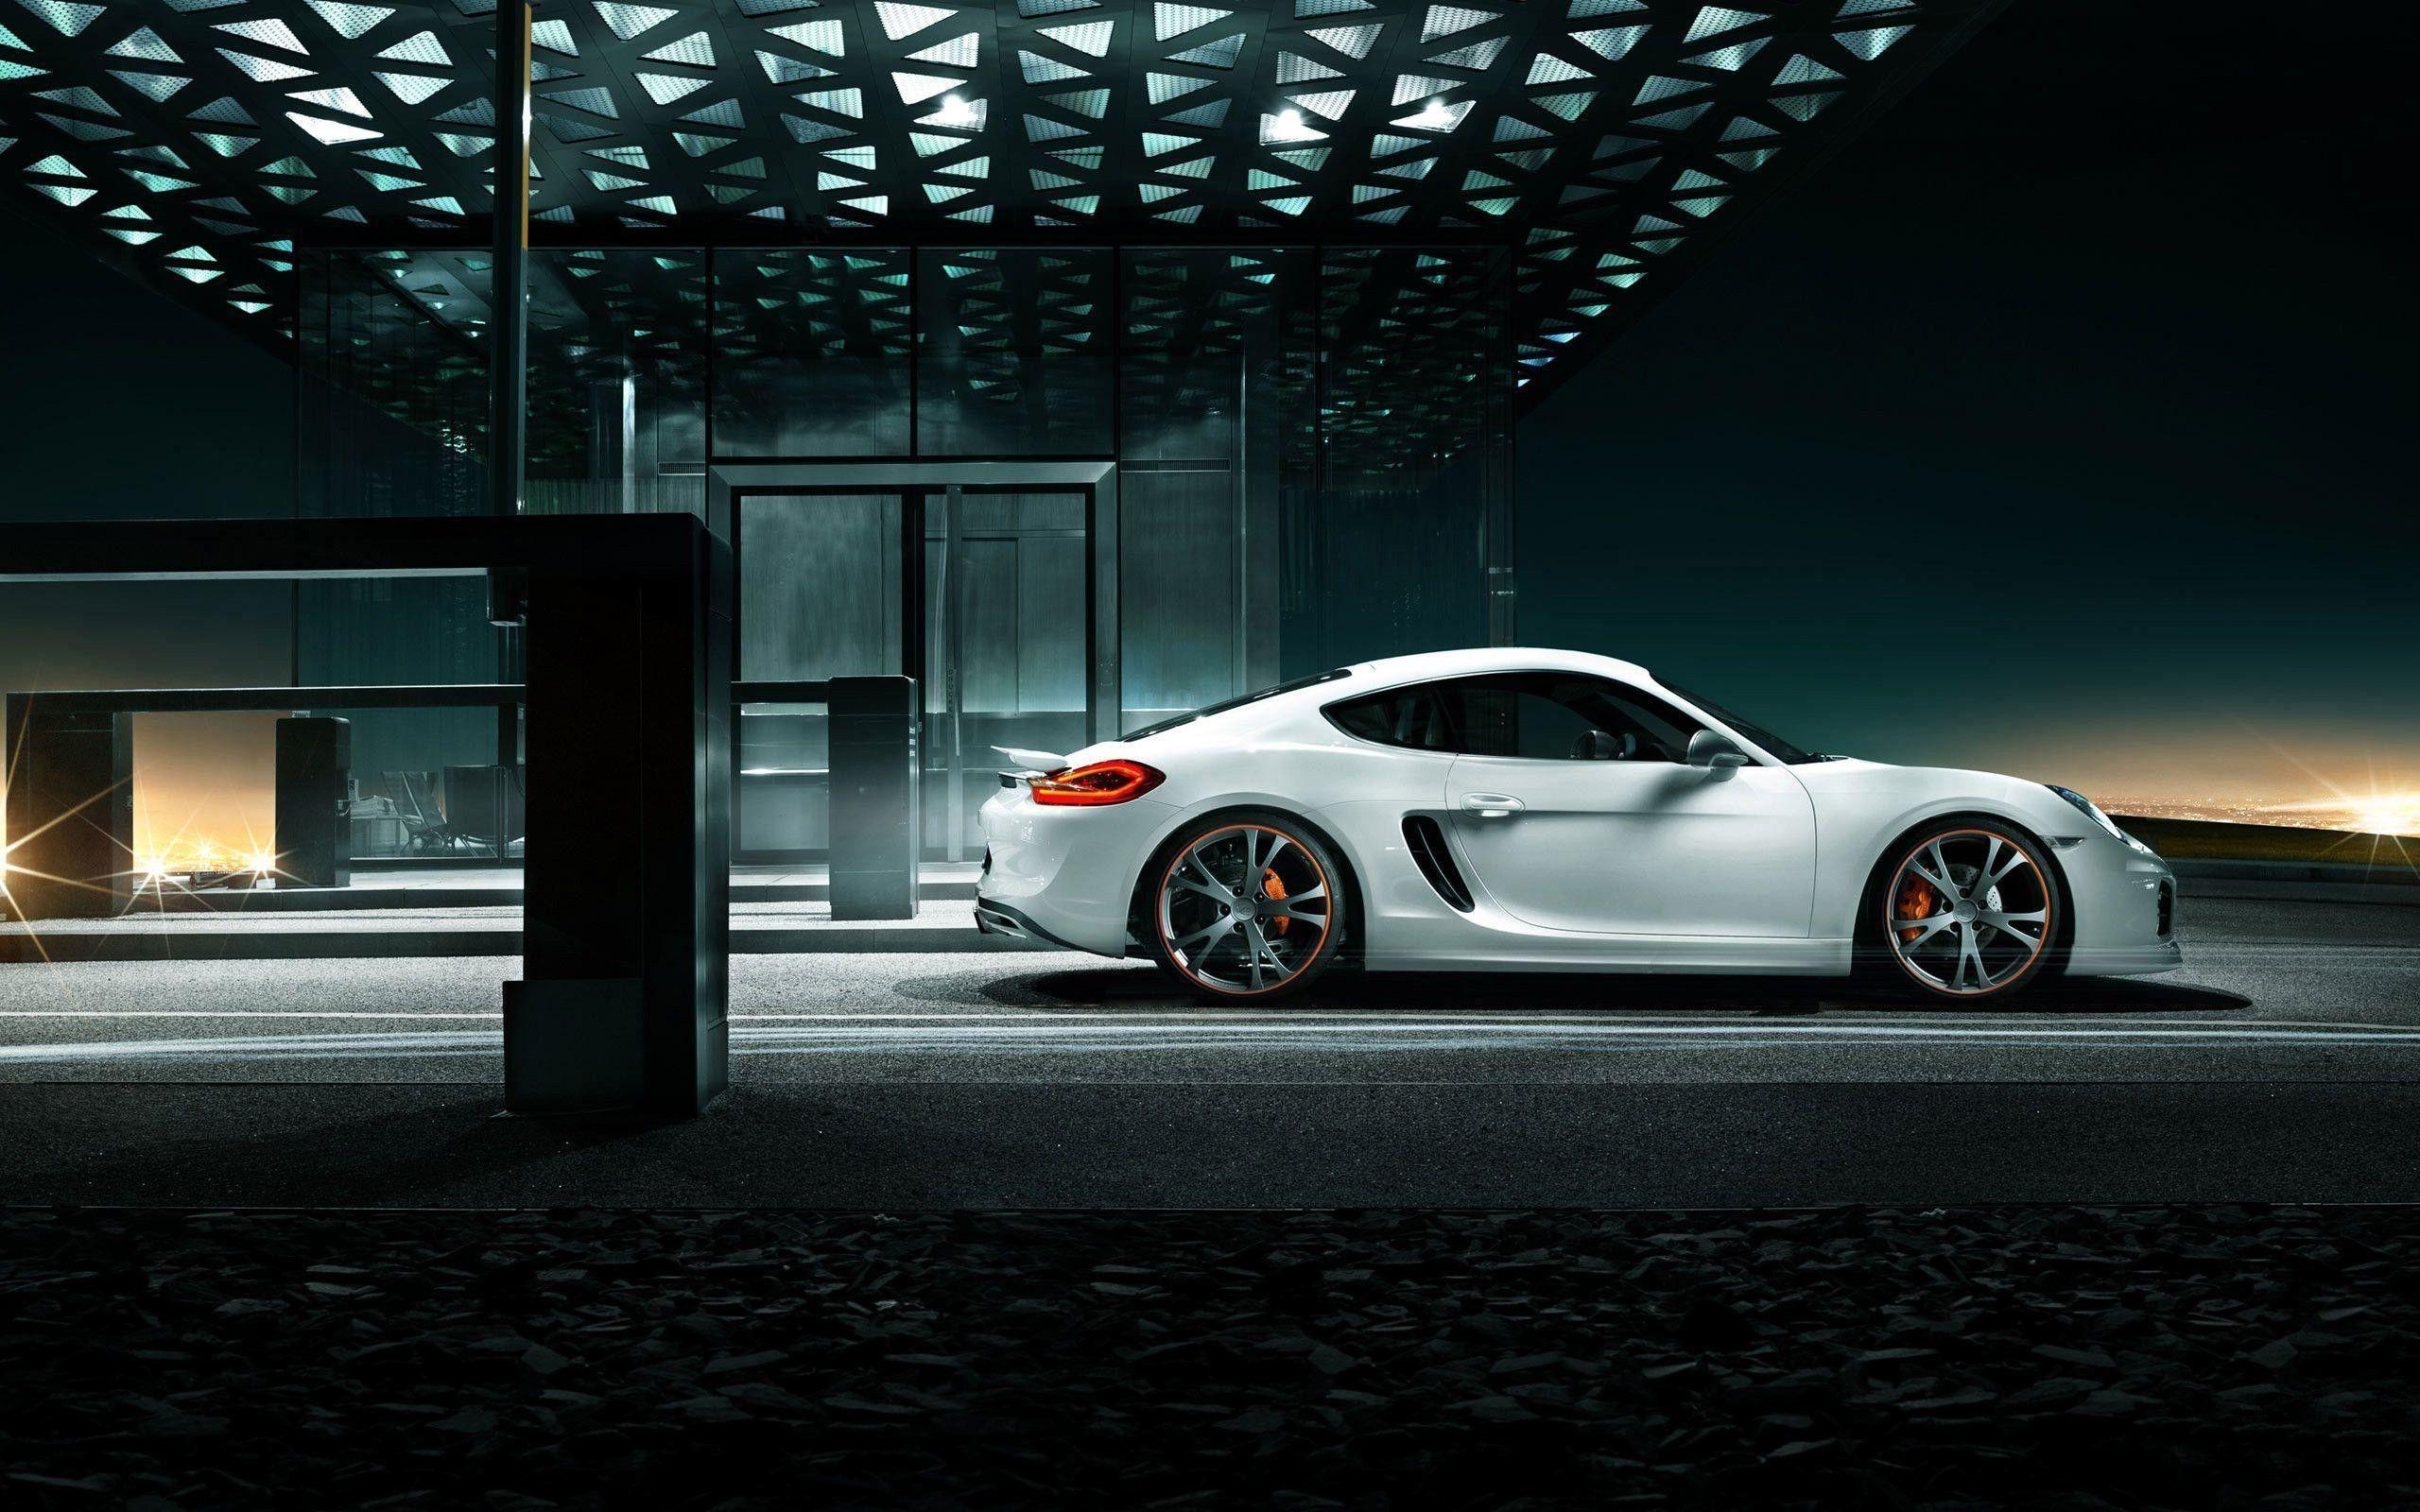 Porsche Cayman Wallpapers Top Free Porsche Cayman Backgrounds Wallpaperaccess